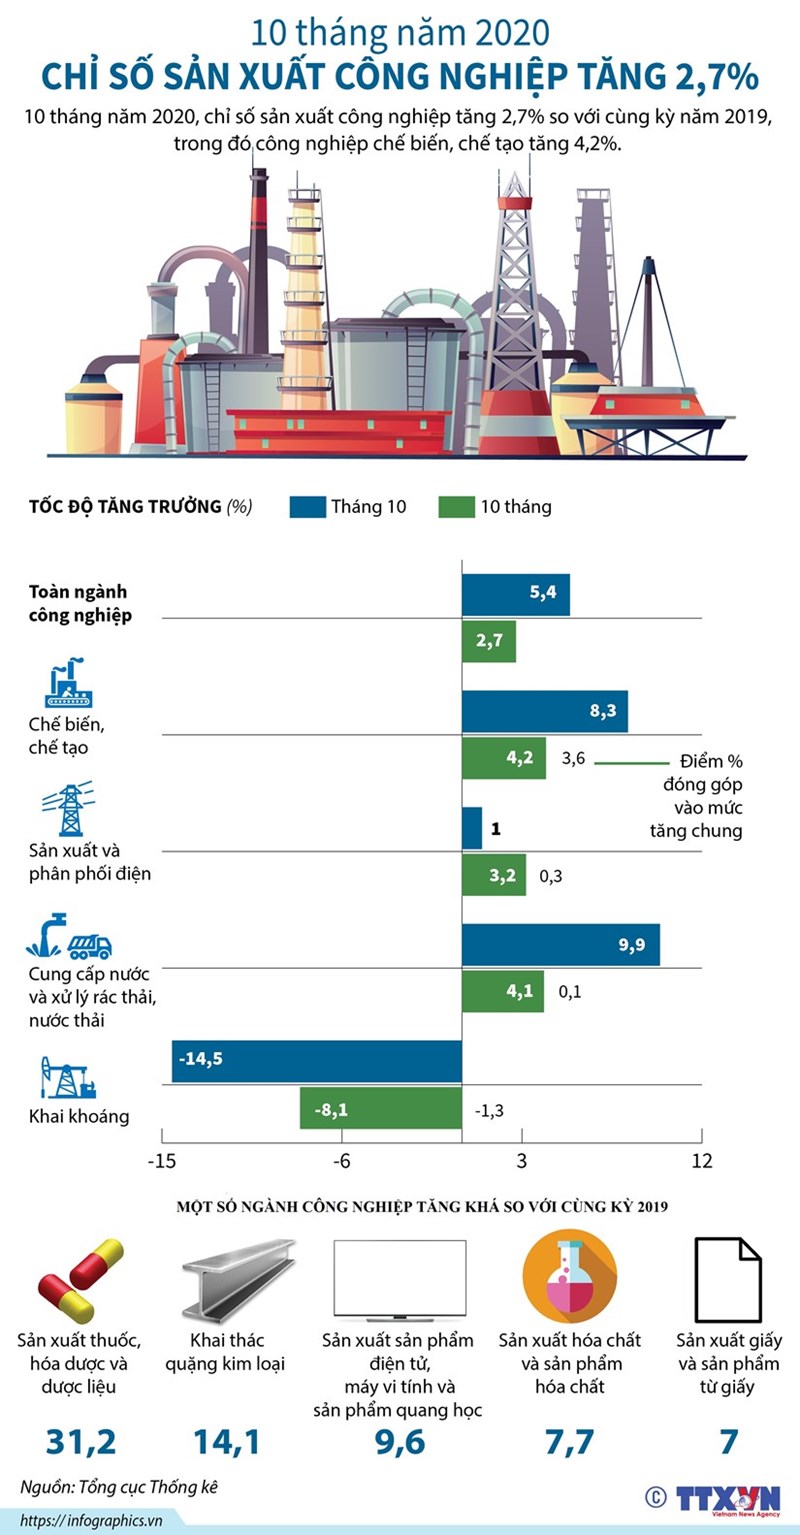 [Infographics] 10 tháng năm 2020, chỉ số sản xuất công nghiệp tăng 2,7% - Ảnh 1